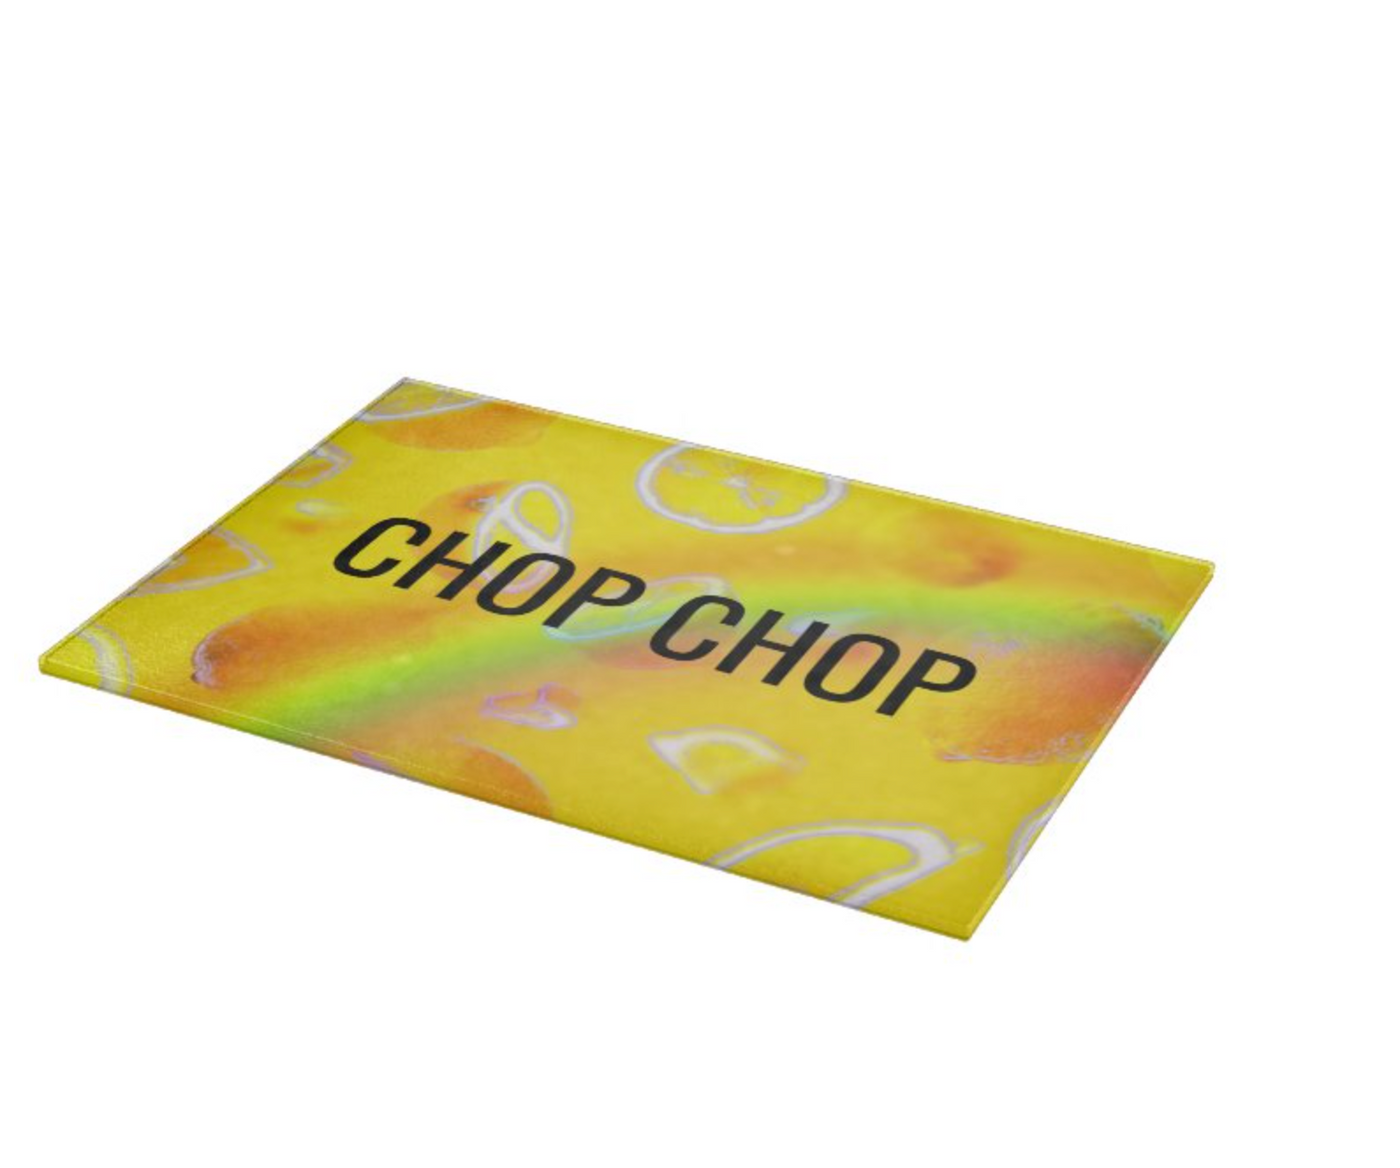 Chop Chop Lemon Cutting Board